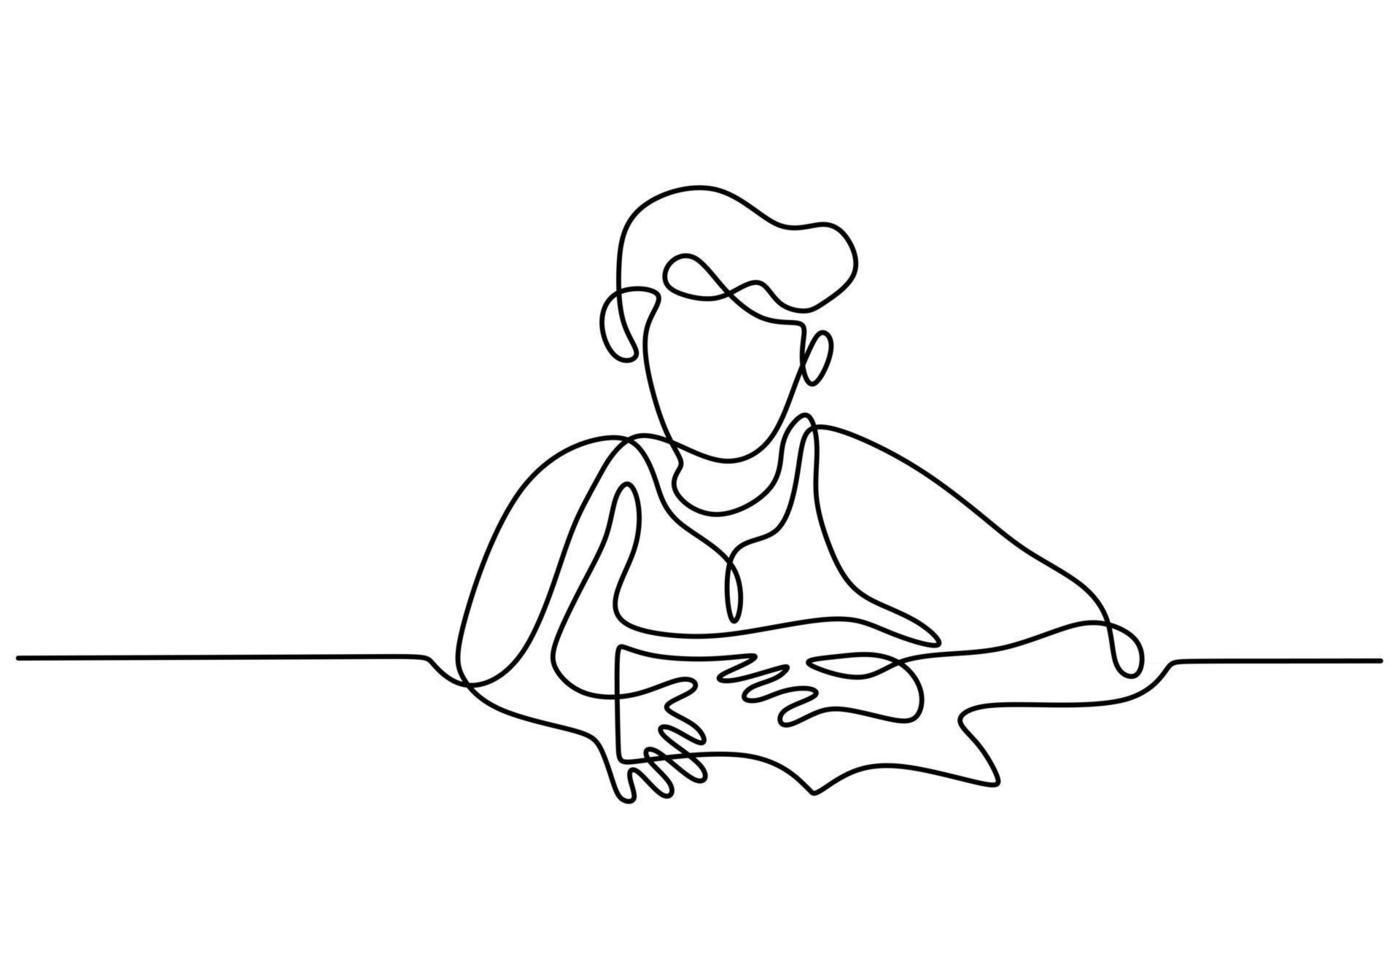 desenho de linha contínua de um menino lendo um livro vetor